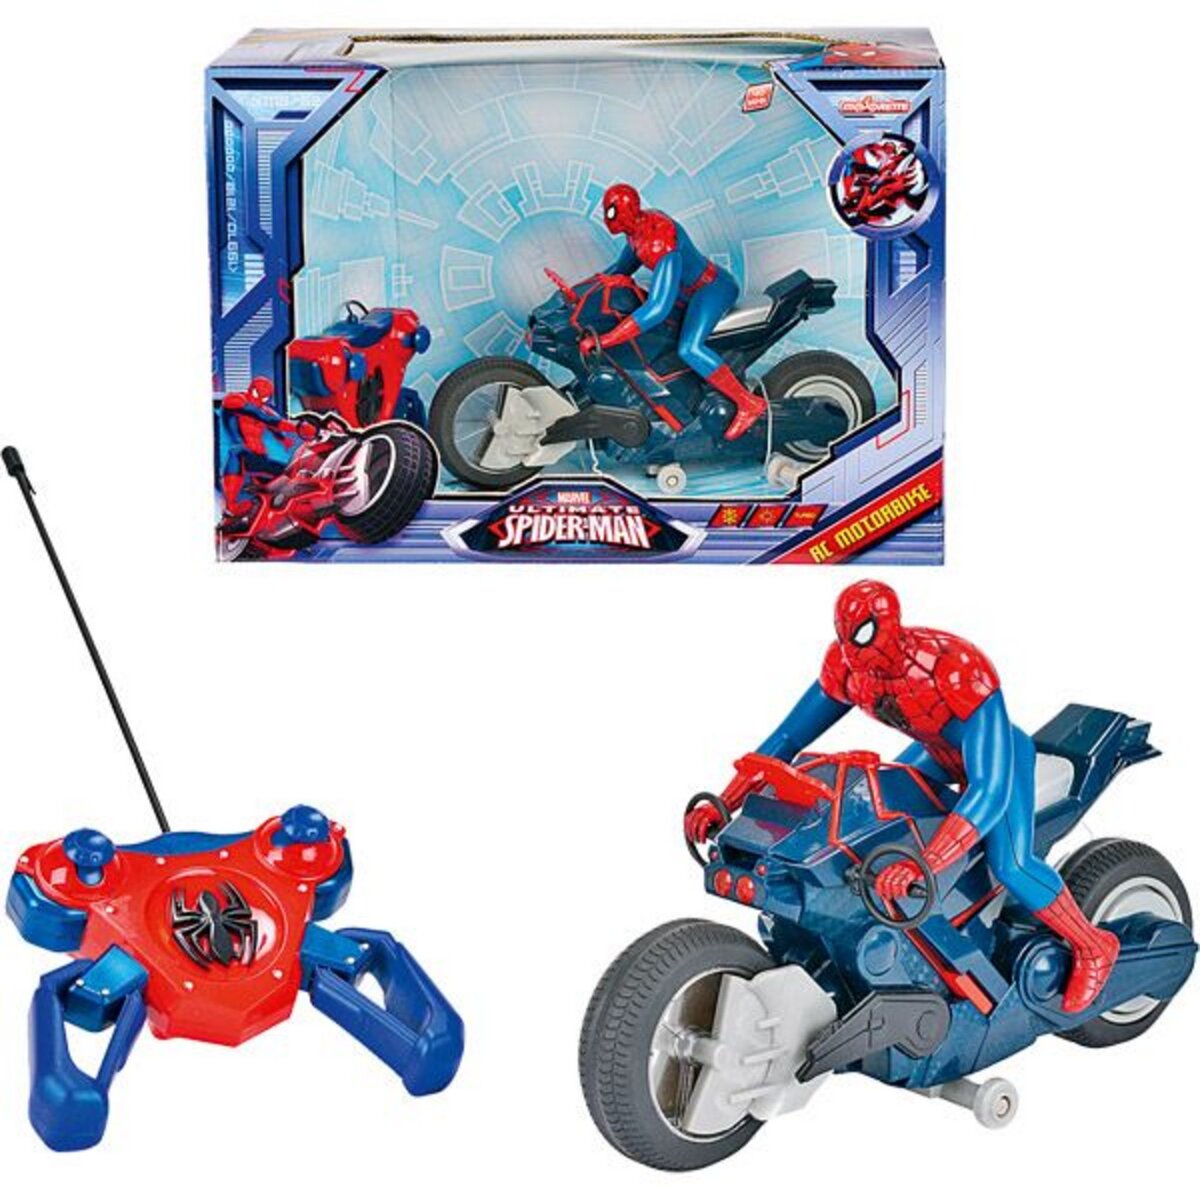 Vehicules Radiocommandes Miniatures Circuit Spiderman Majorette pas cher -  Achat neuf et occasion à prix réduit